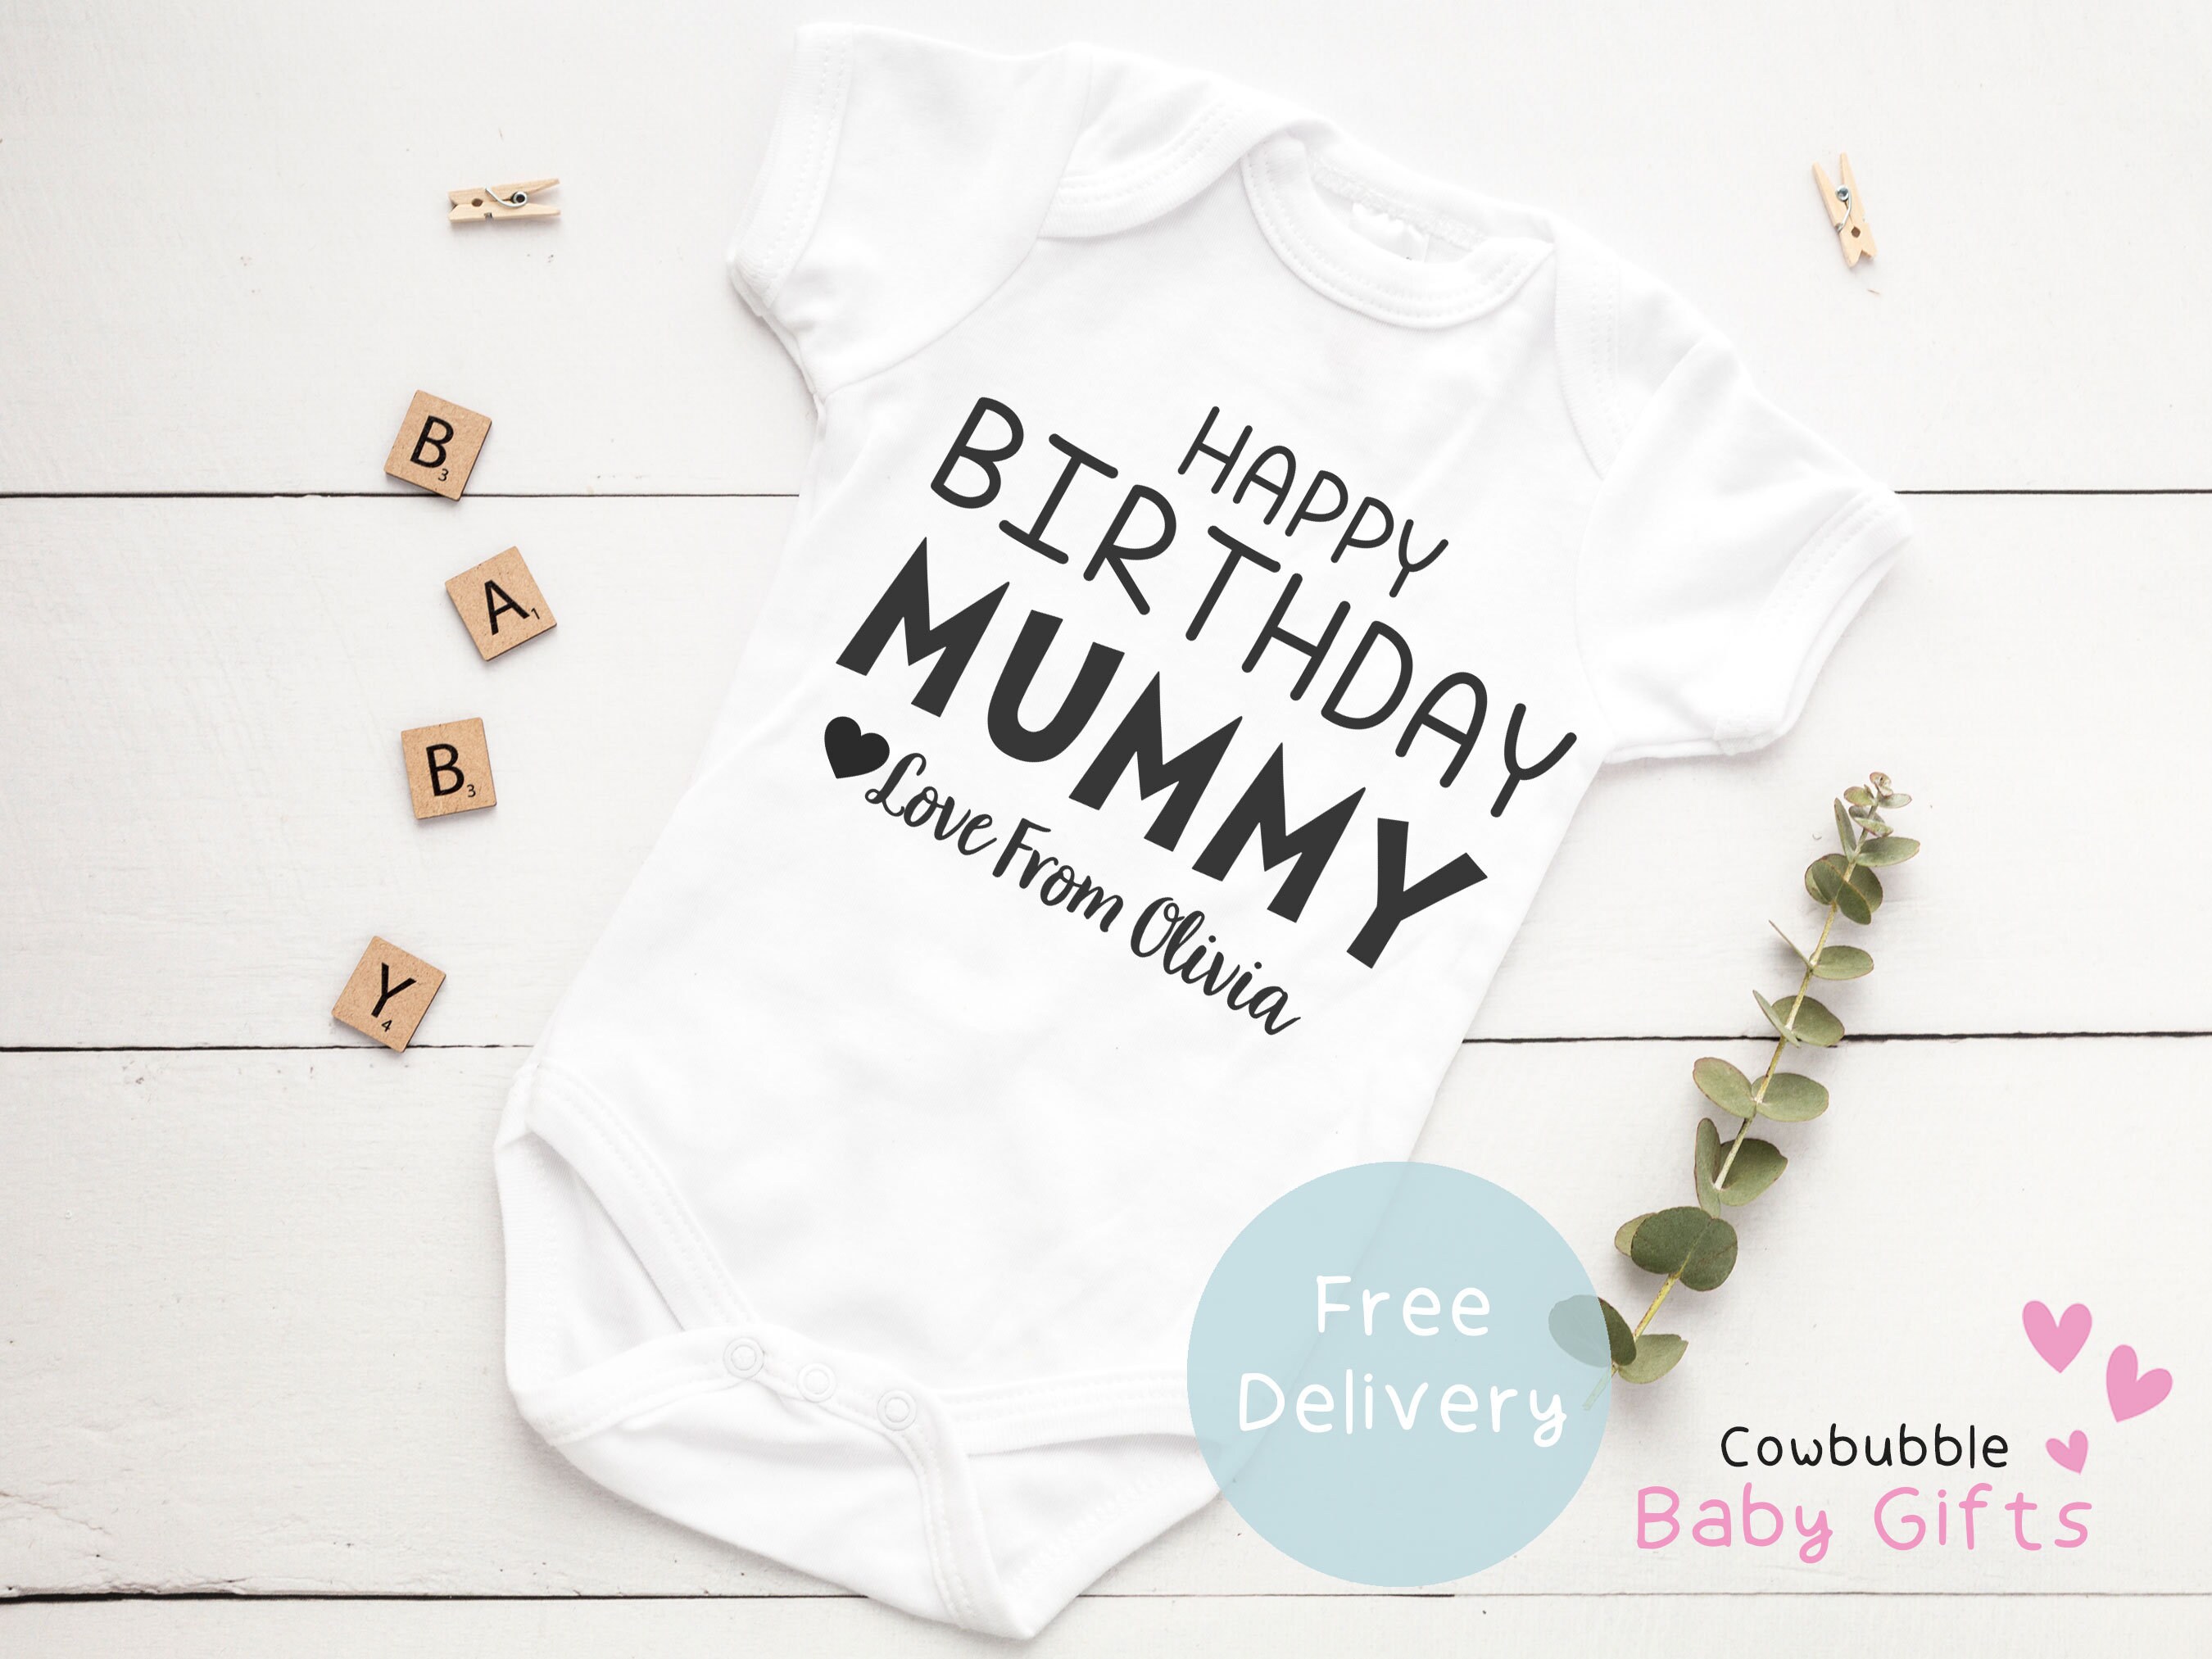 Happy Birthday Mummy Cute Boys and Girls Baby Vest Bodysuit